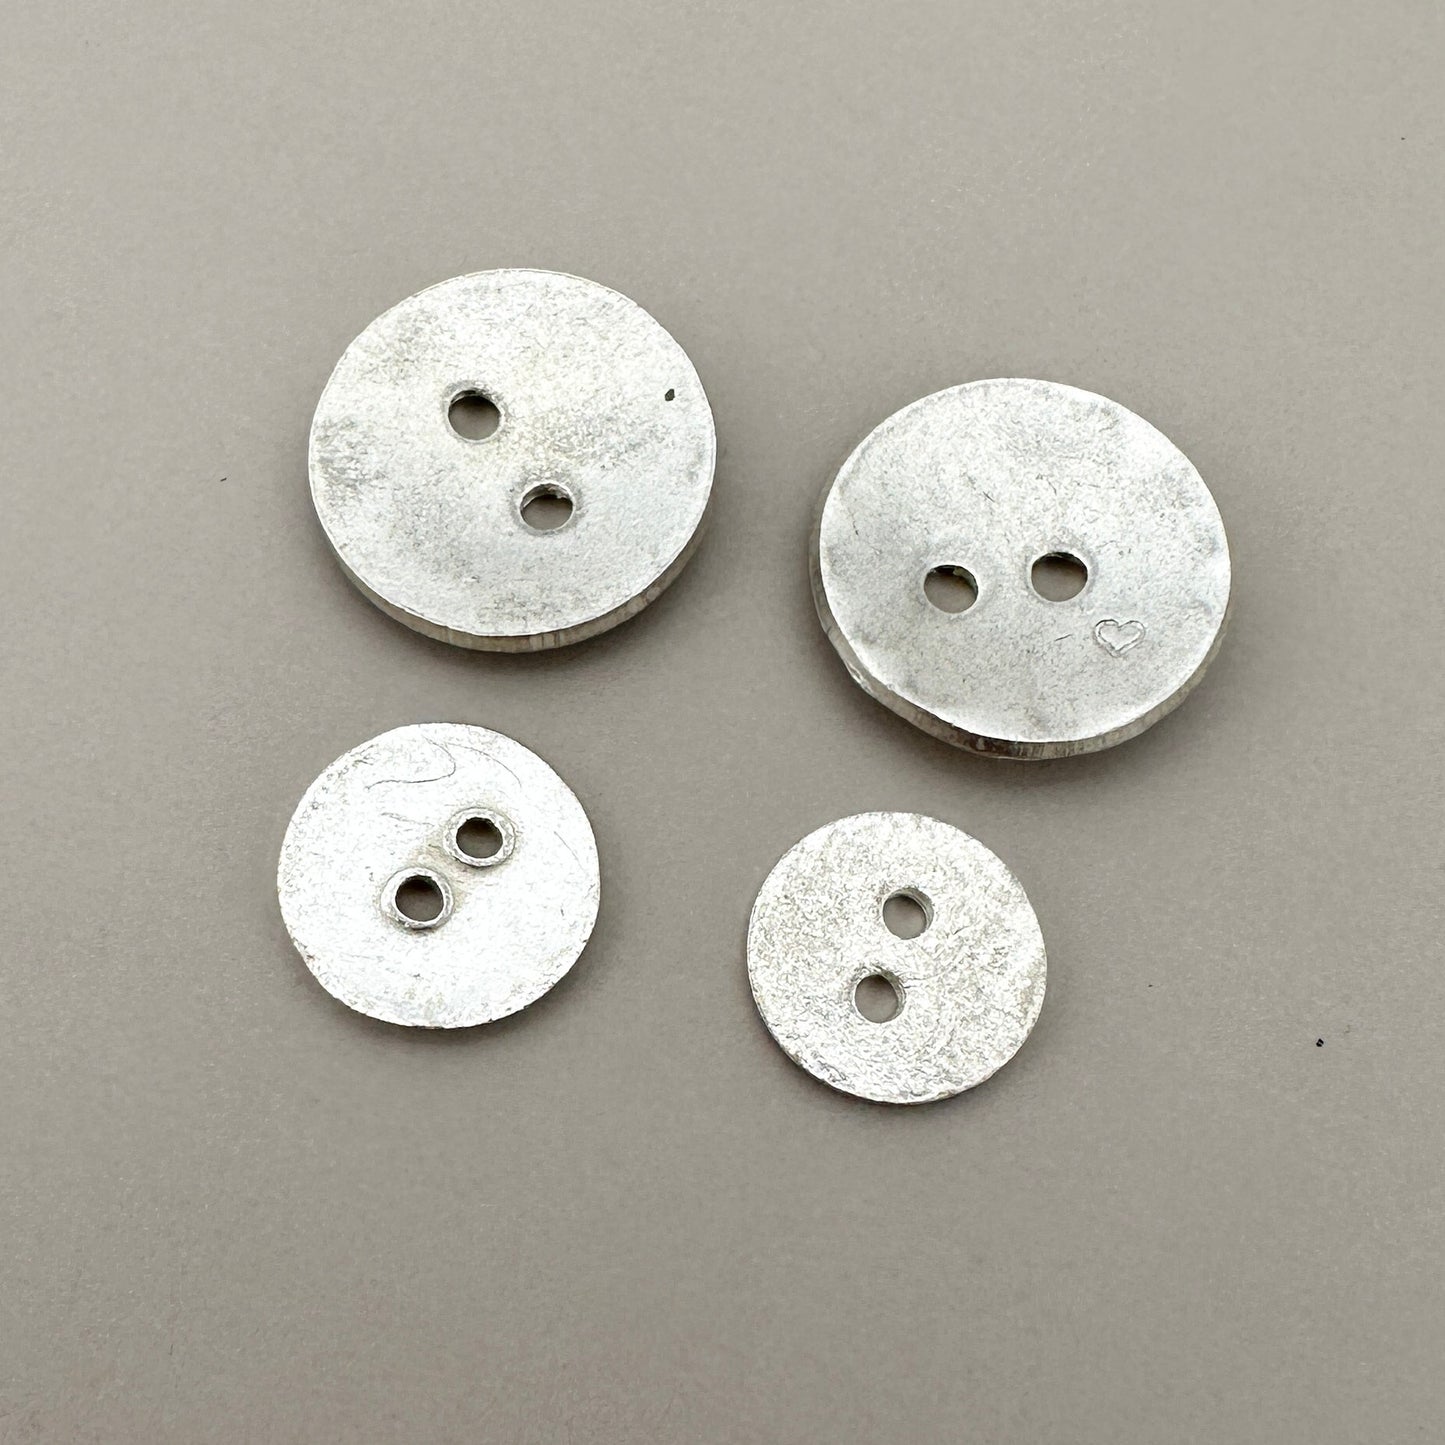 2-Hole Button 10mm Silver (Thai Silver) - 1 pc. (M1858)